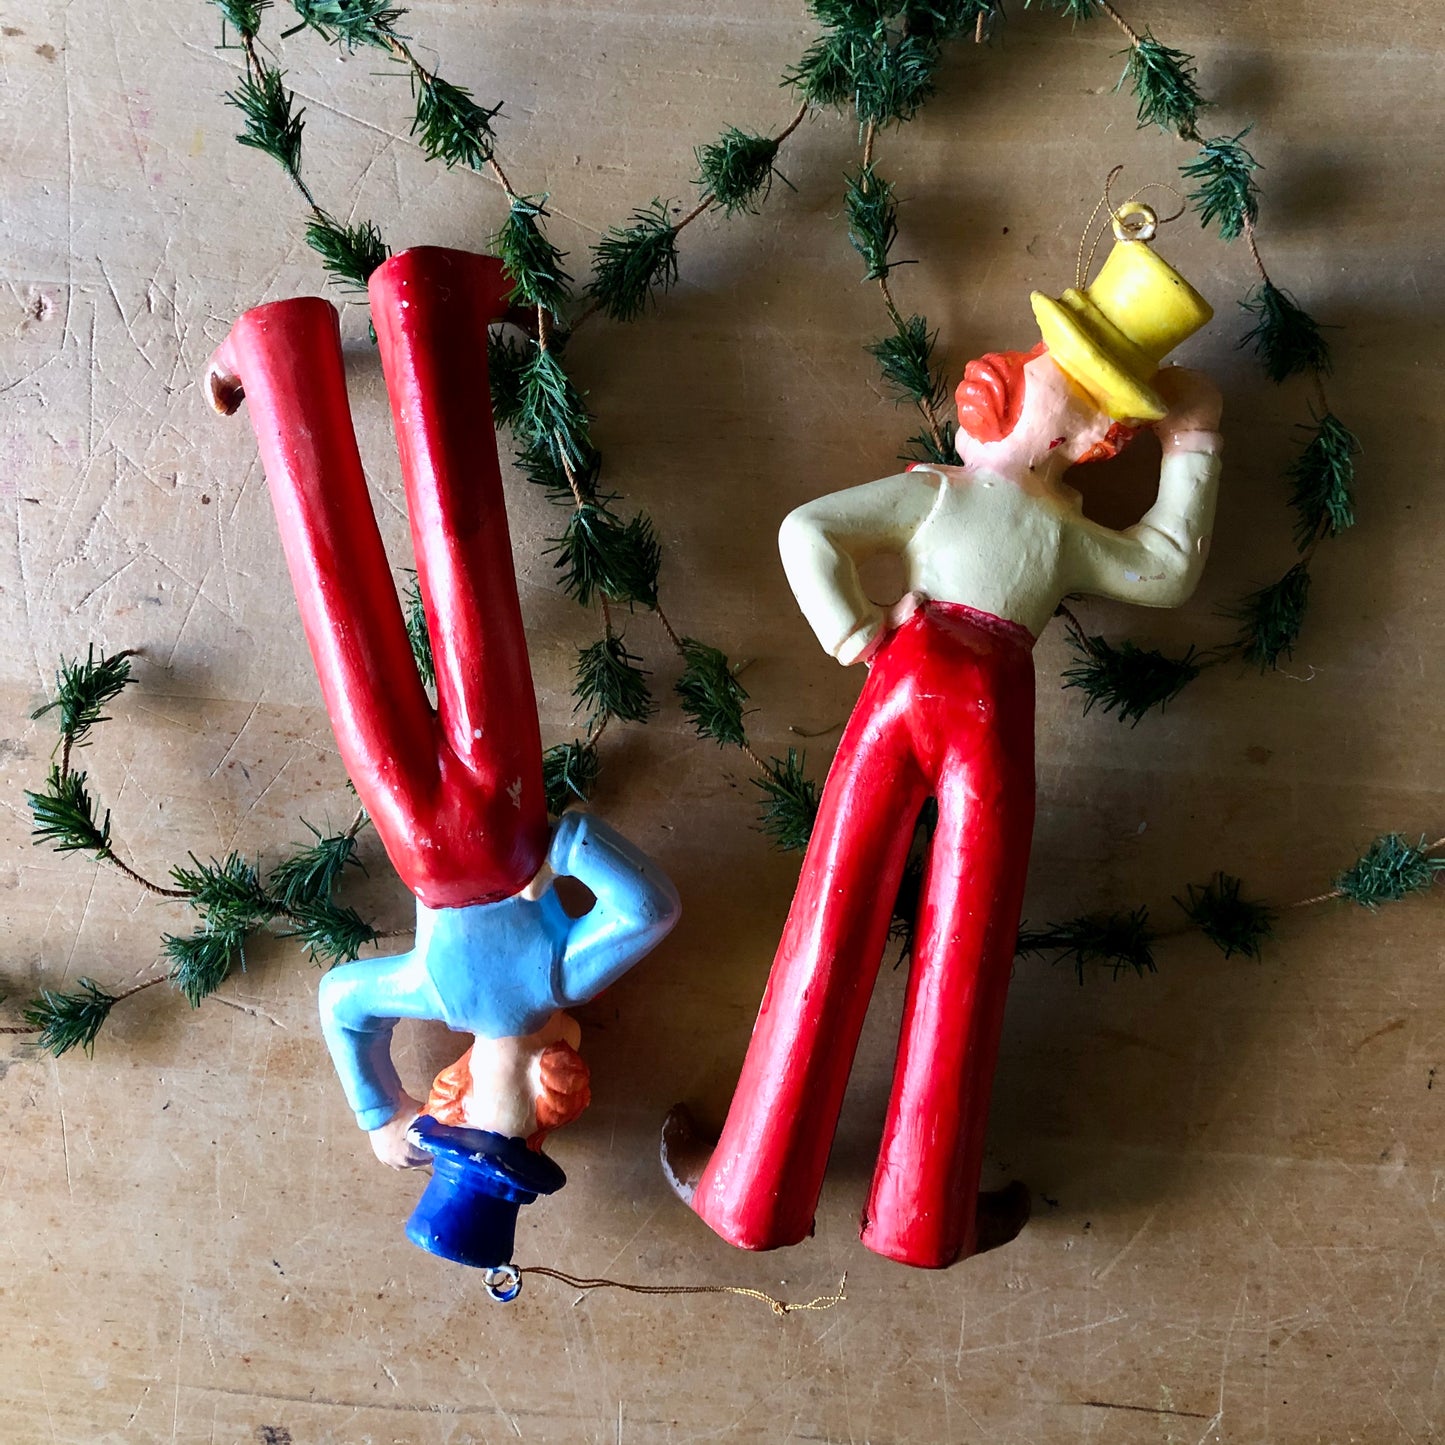 Vintage Silvestri Plastic Clown Ornaments (c.1950s)